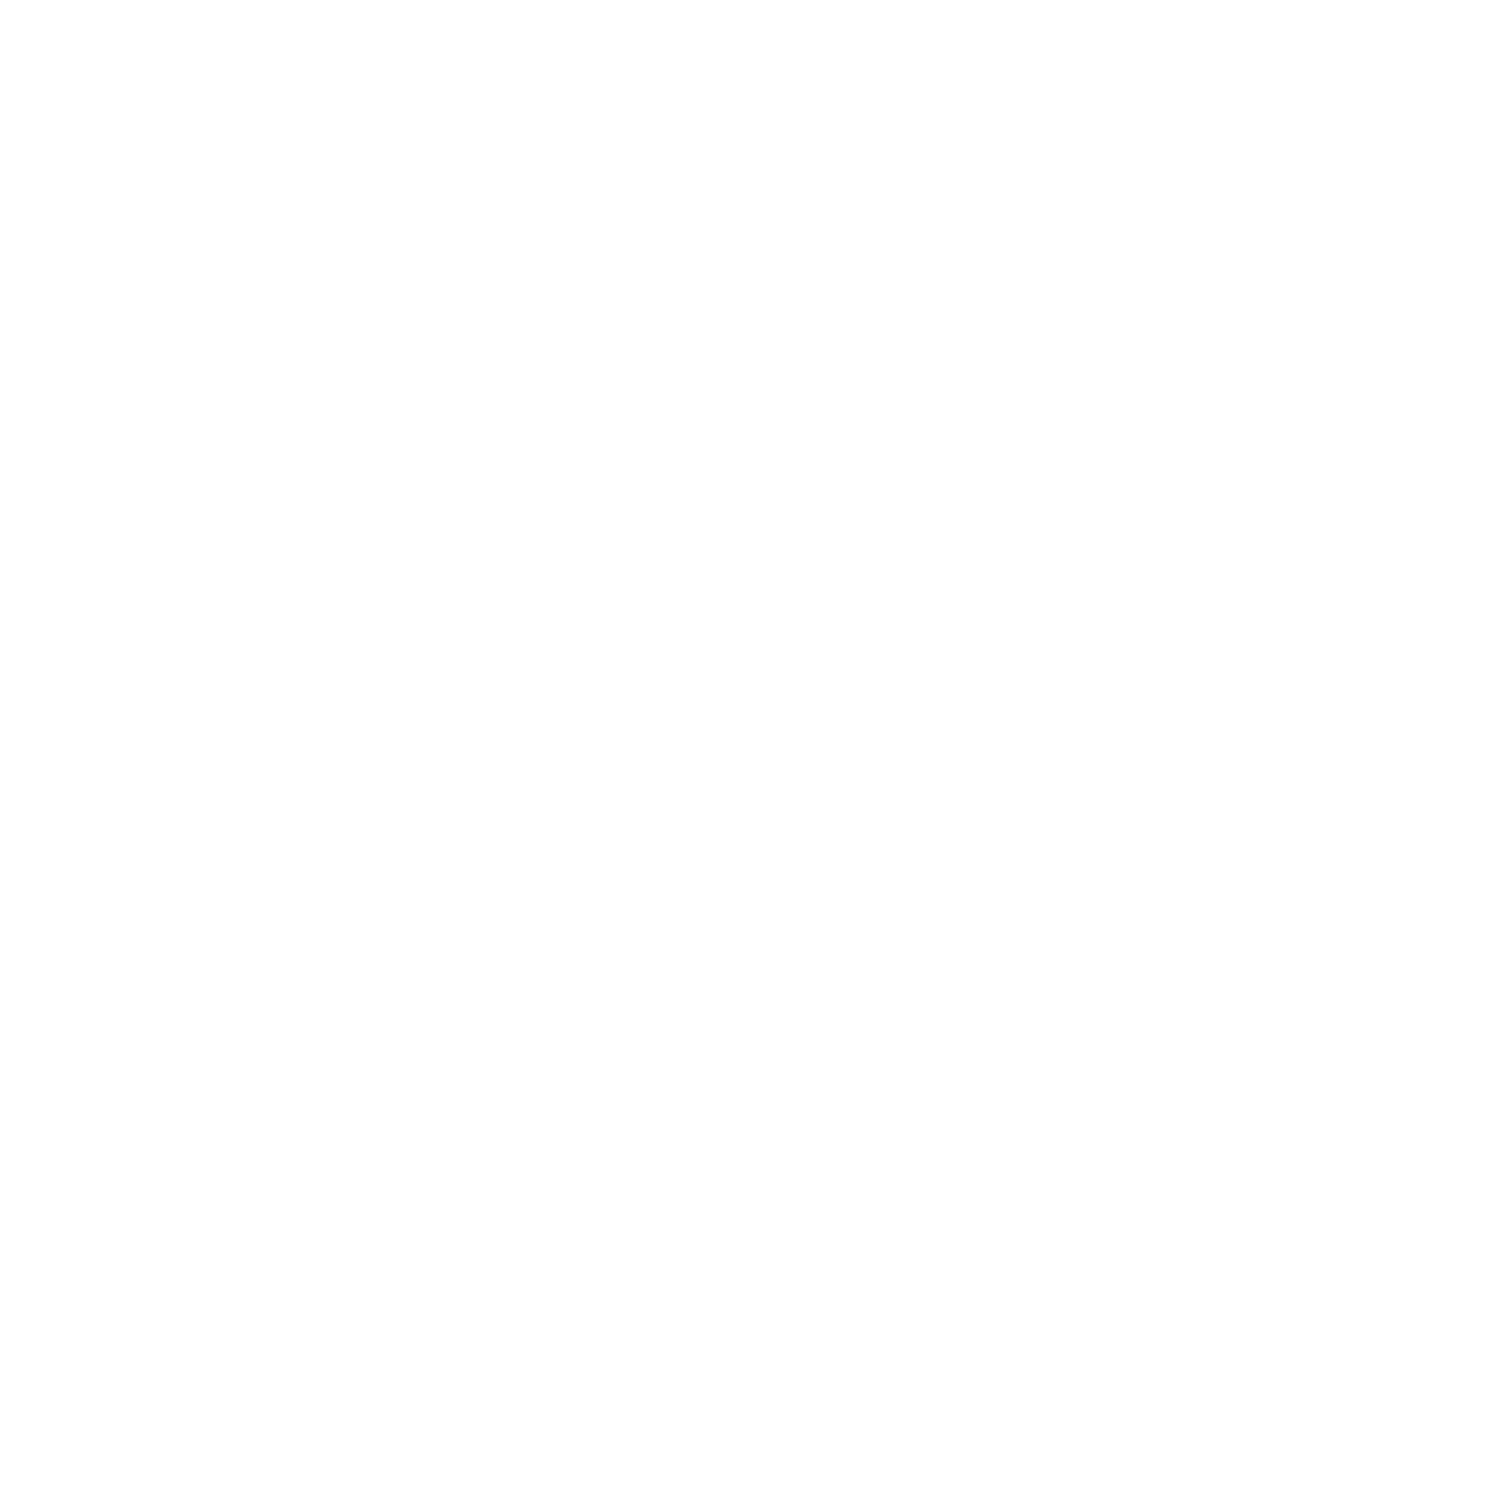 Vulcan.png